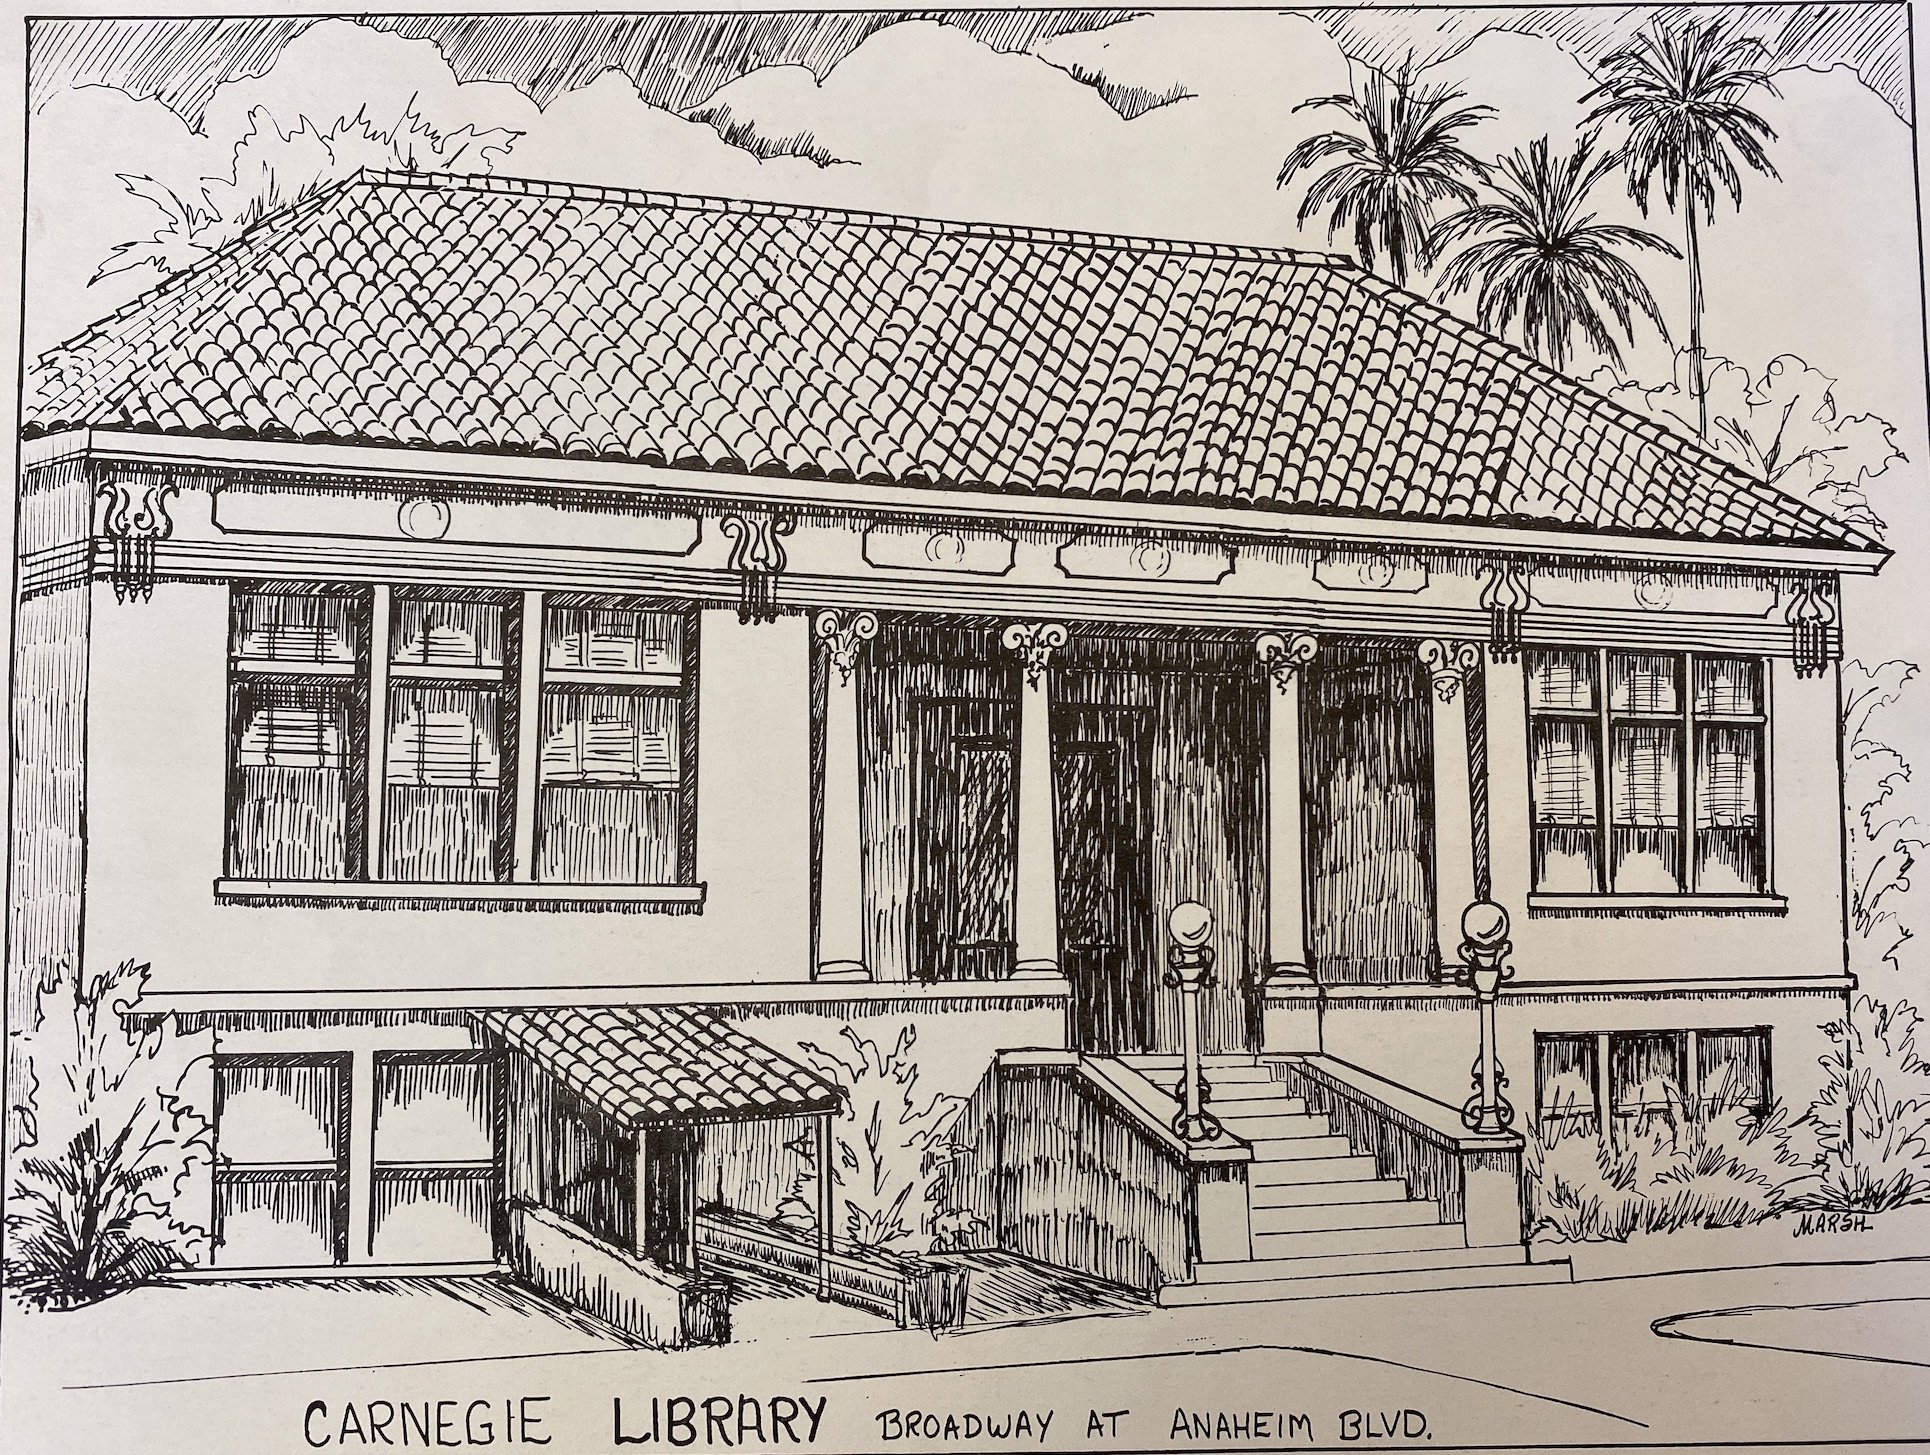  Anaheim Carnegie Library. Illustration by historian, Diann Marsh. Courtesy Anaheim Heritage Center. 